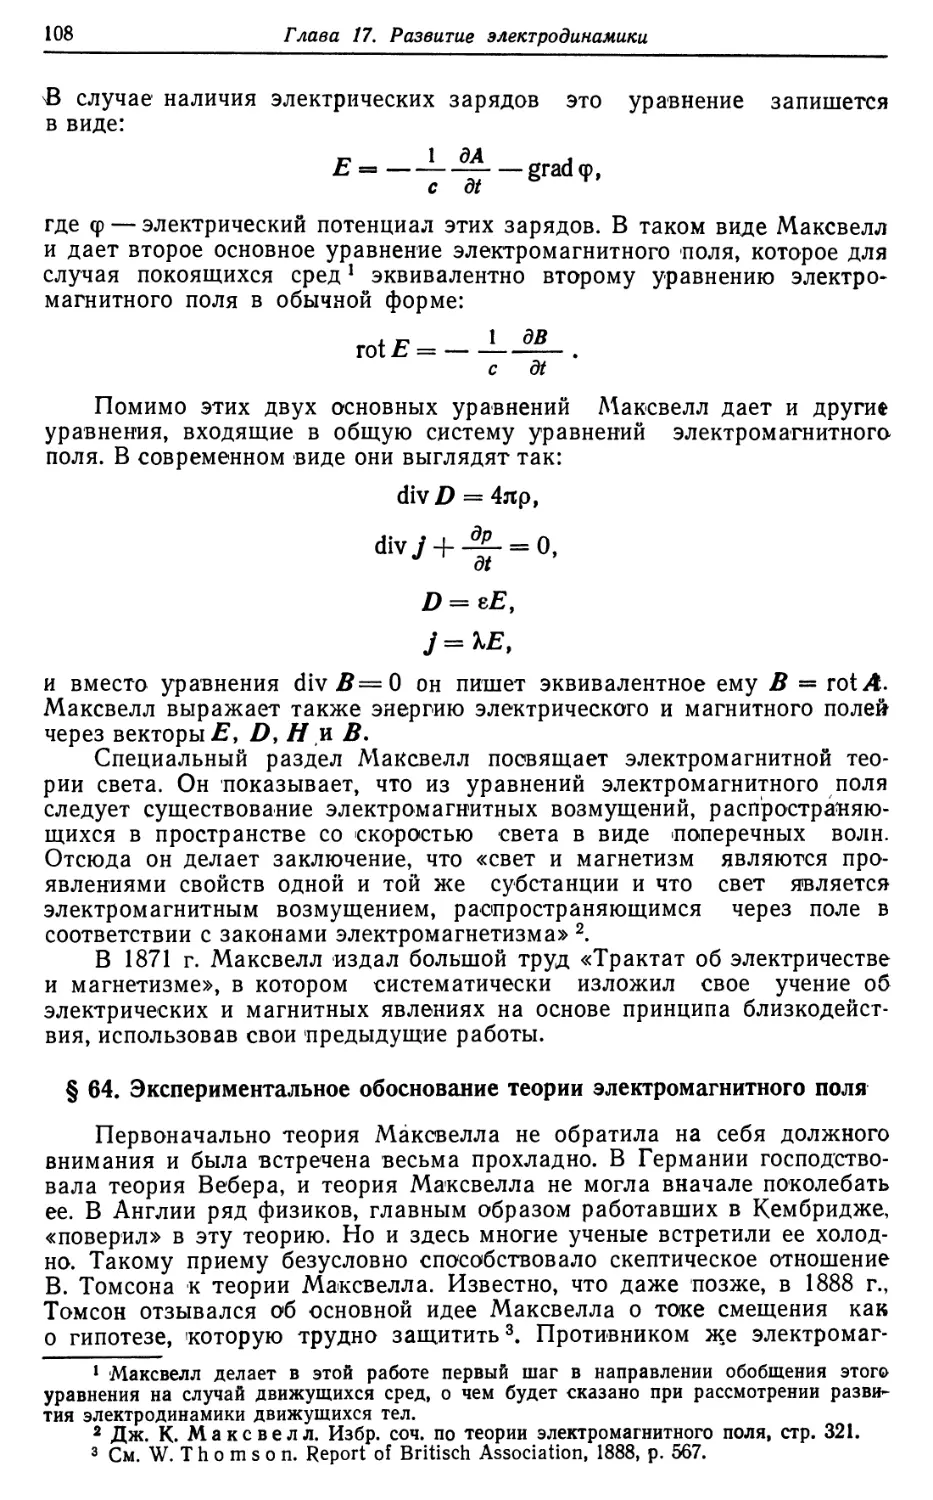 § 64. Экспериментальное обоснование теории электромагнитного поля